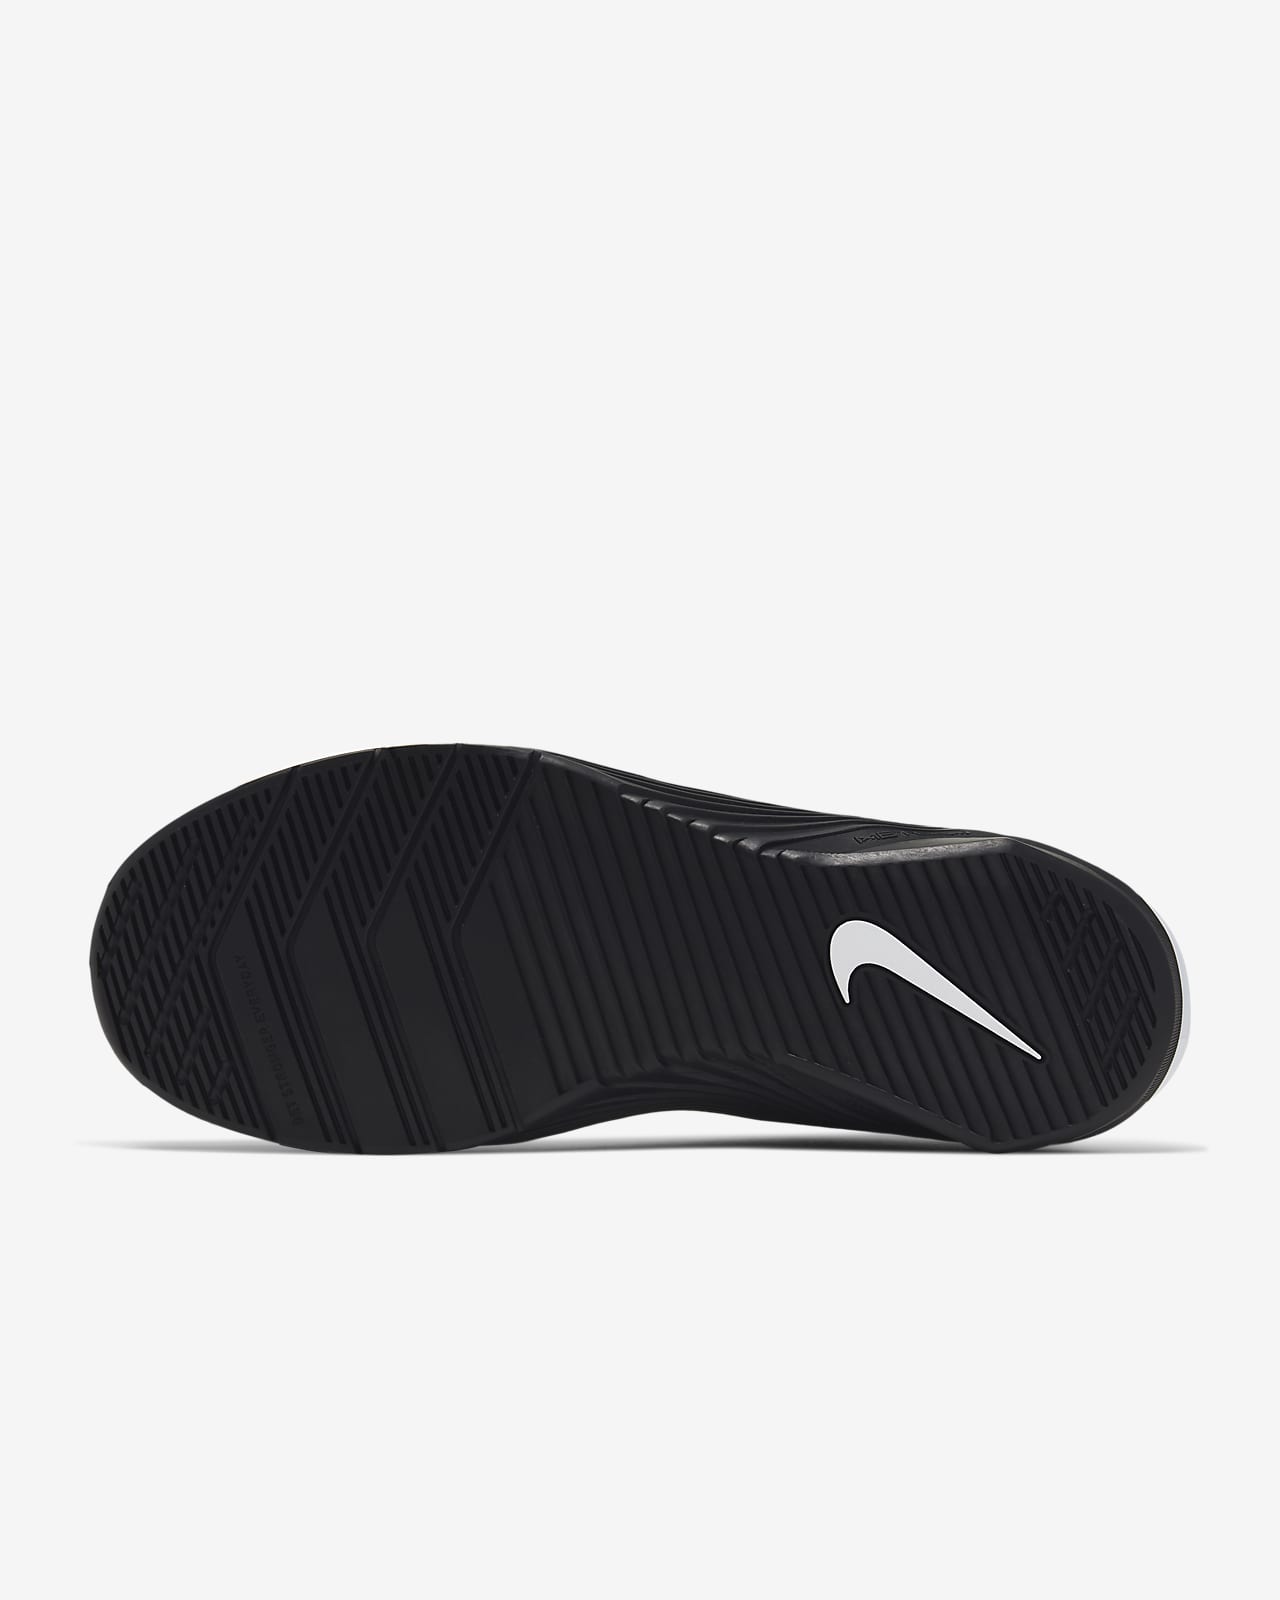 Nike Metcon 5 en promoción  Hombre Zapatillas Crossfit / Training